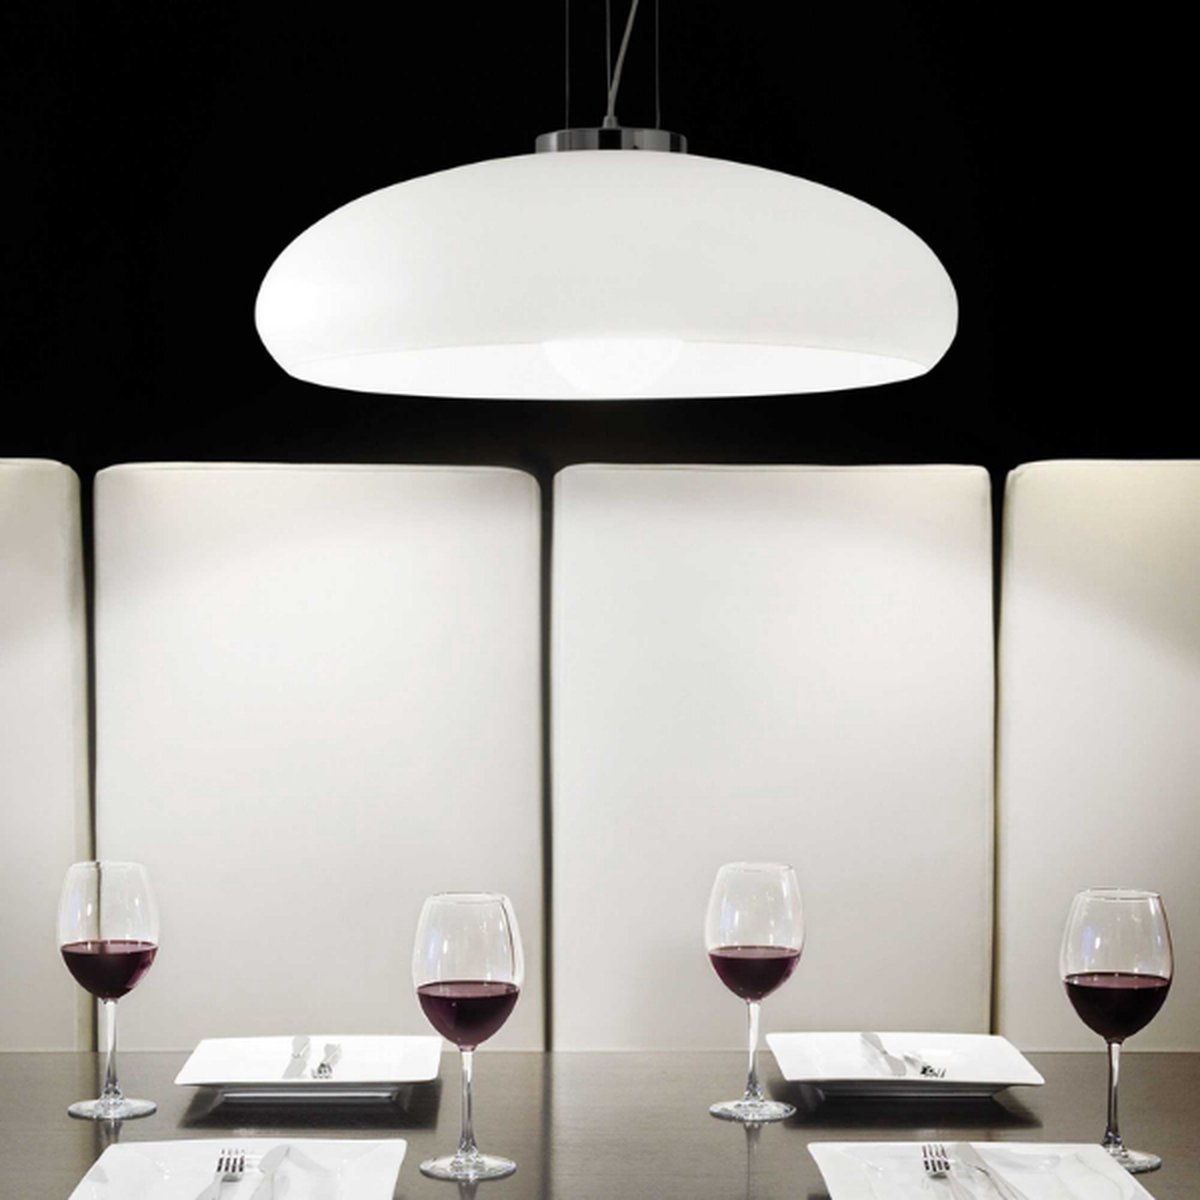 Ideal Lux - Aria - Hanglamp - Metaal - E27 - Wit - Voor binnen - Lampen - Woonkamer - Eetkamer - Keuken